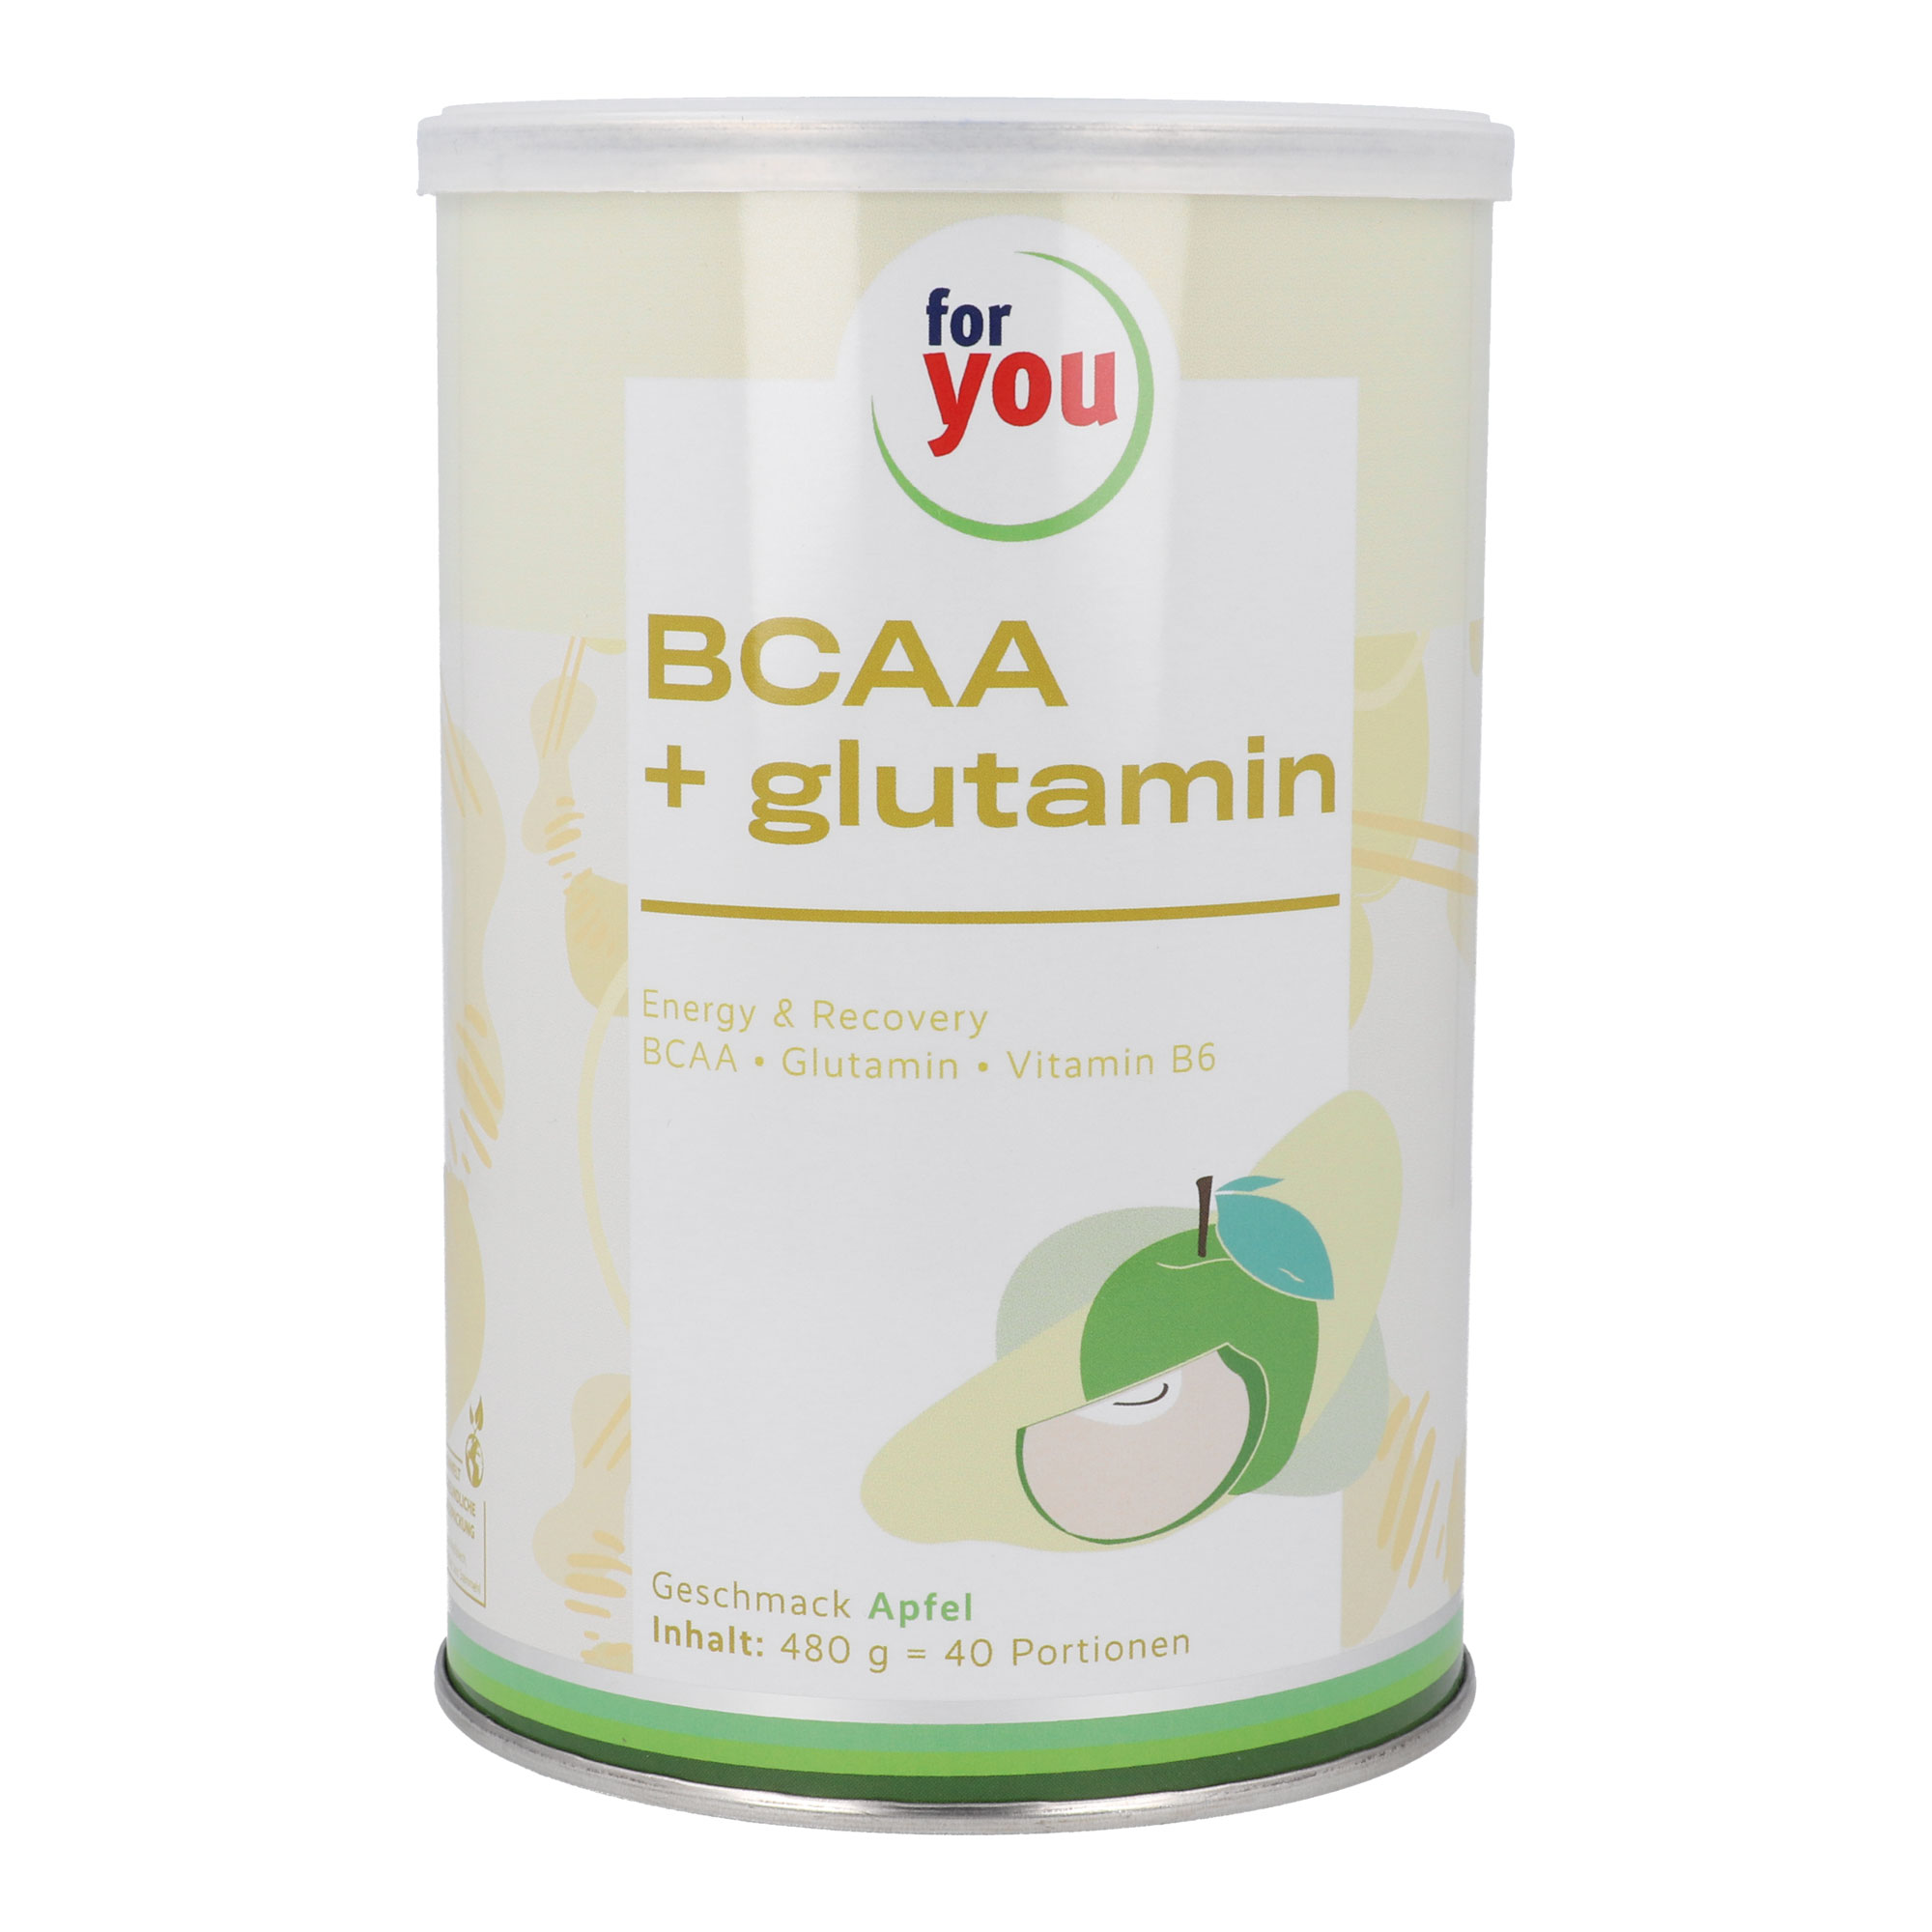 Nahrungsergänzungsmittel mit verweigtkettigen Aminosäuren (BCAA), L-Glutamin und Vitamin B6. Mit erfrischendem Apfel-Geschmack.